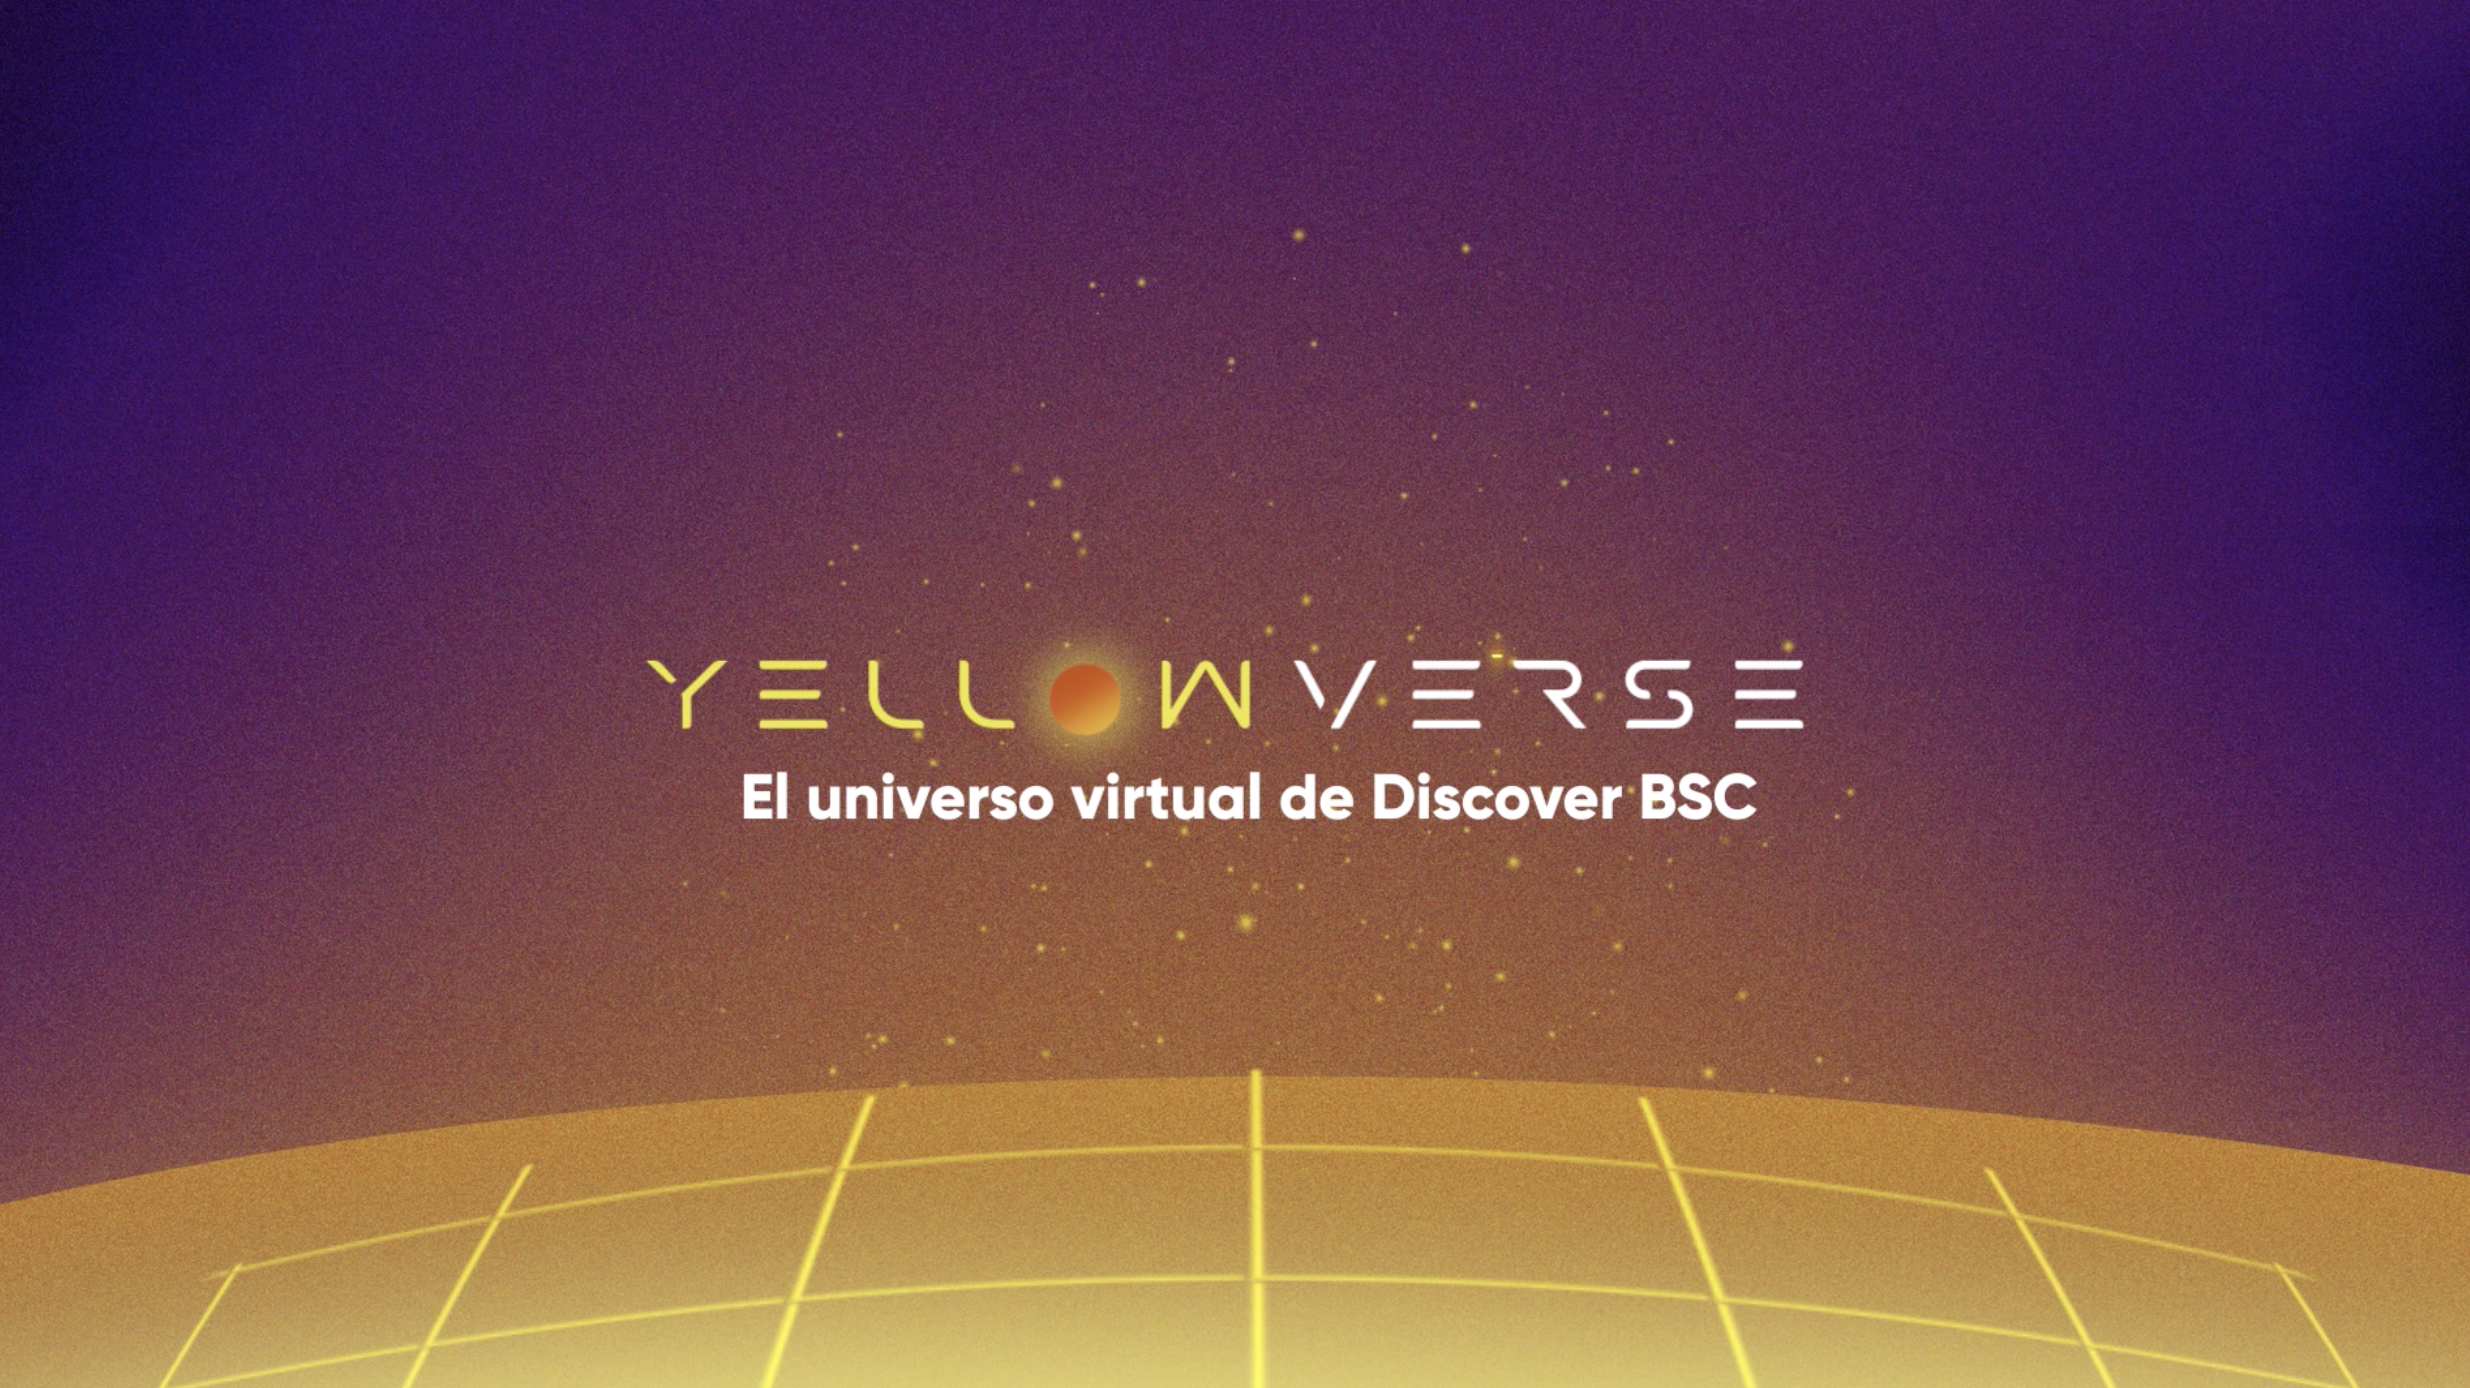 Nuevo: Mullen Lowe Delta y Tarjeta Discover presentan “Yellowverse” o el viaje de los primeros hinchas al metaverso